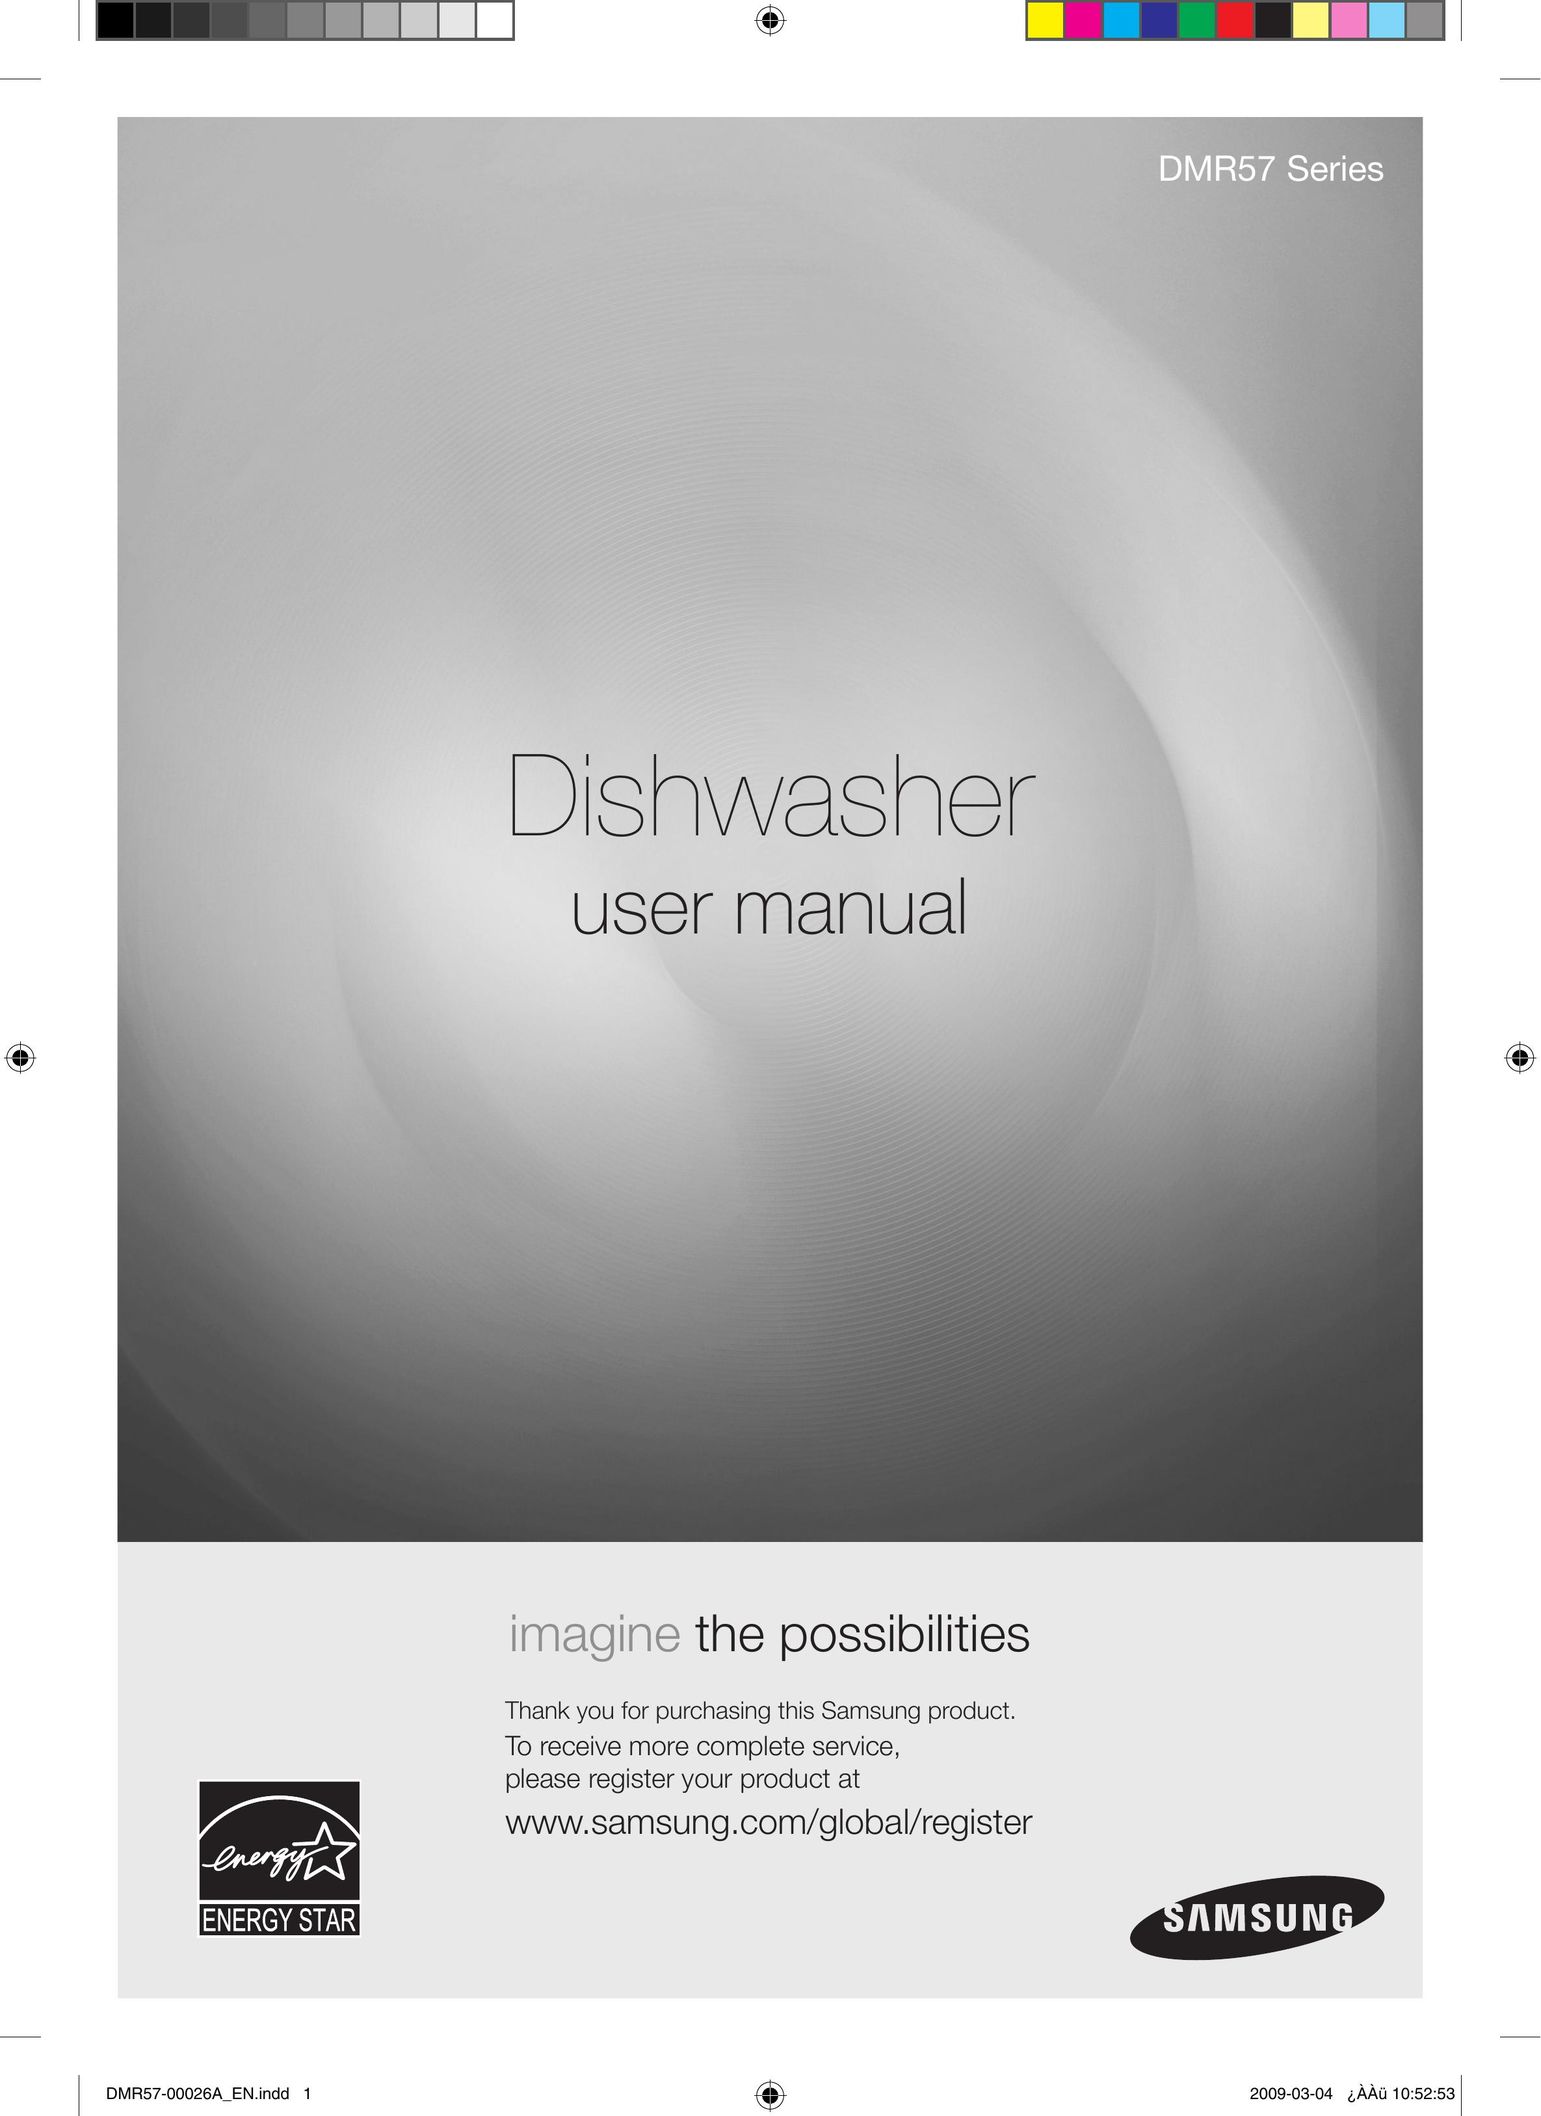 Samsung DMR57LHW Dishwasher User Manual